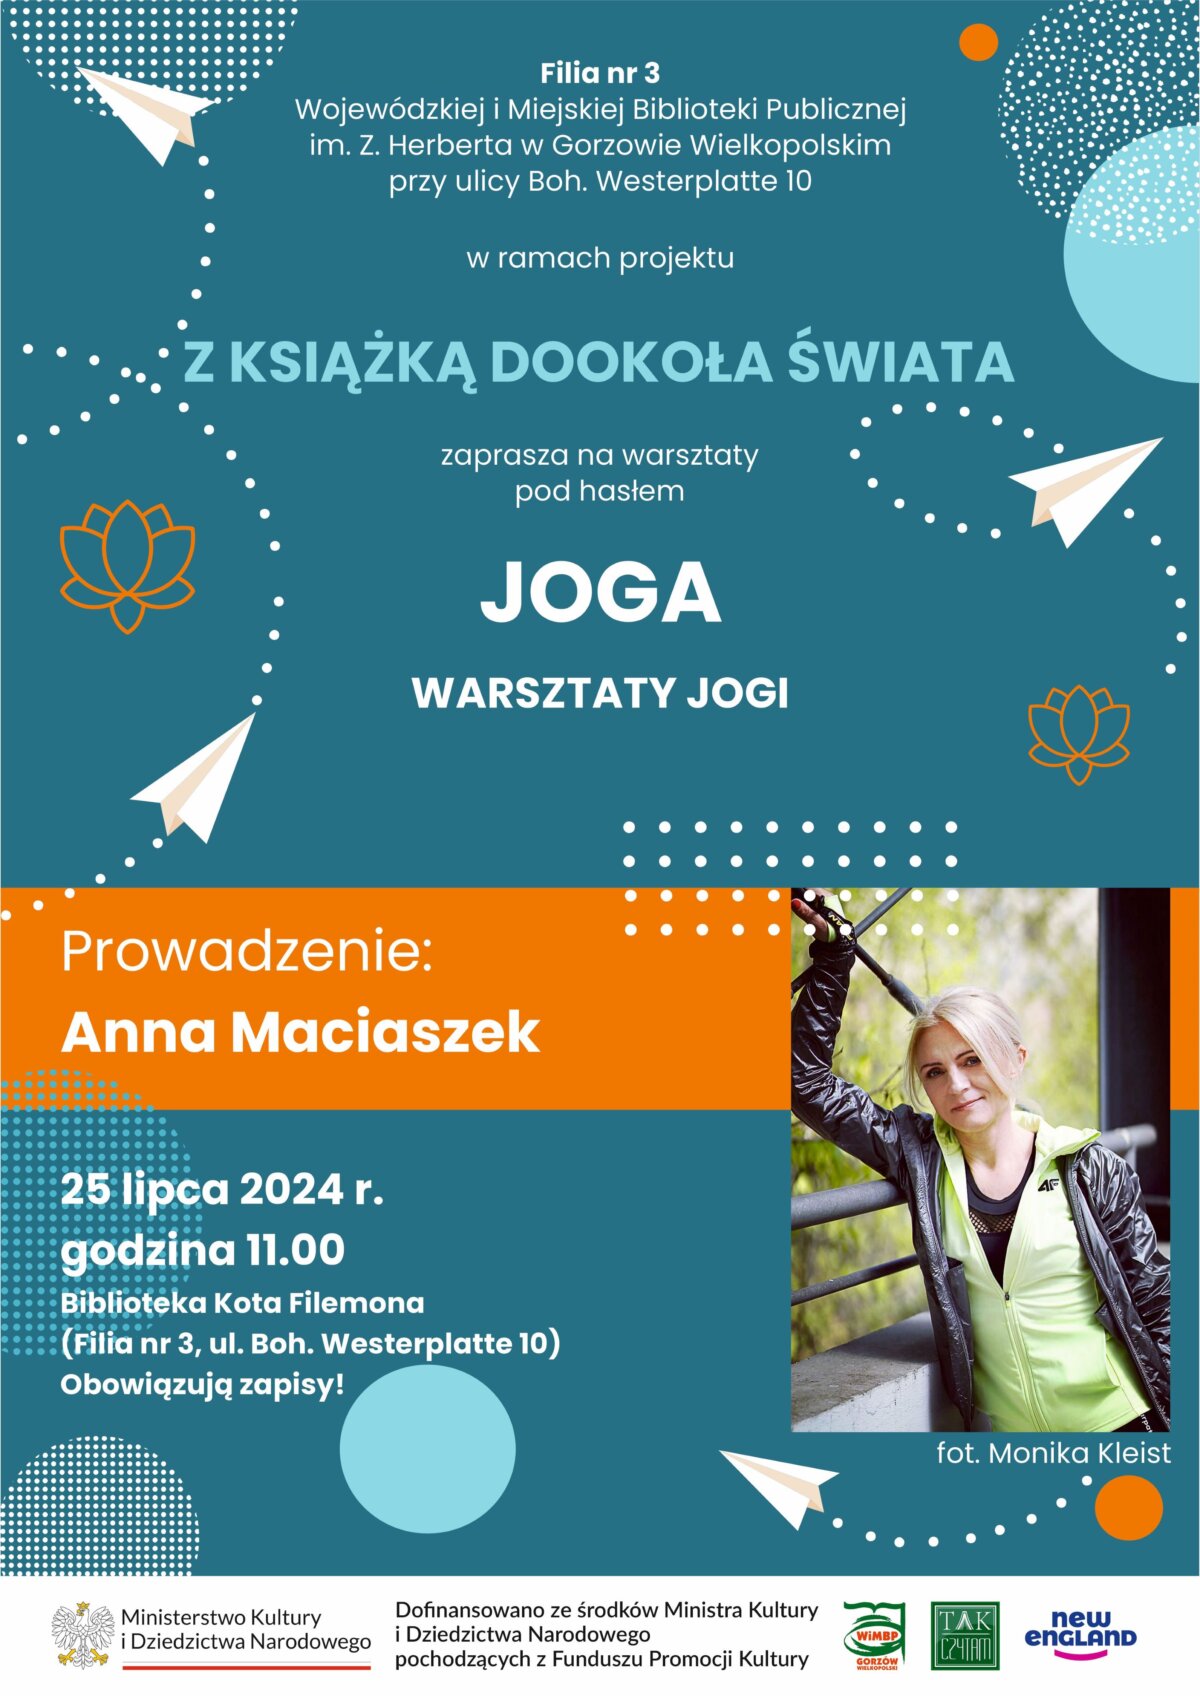 plakat promujący wydarzenie - spotkanie z Anną Maciaszek.